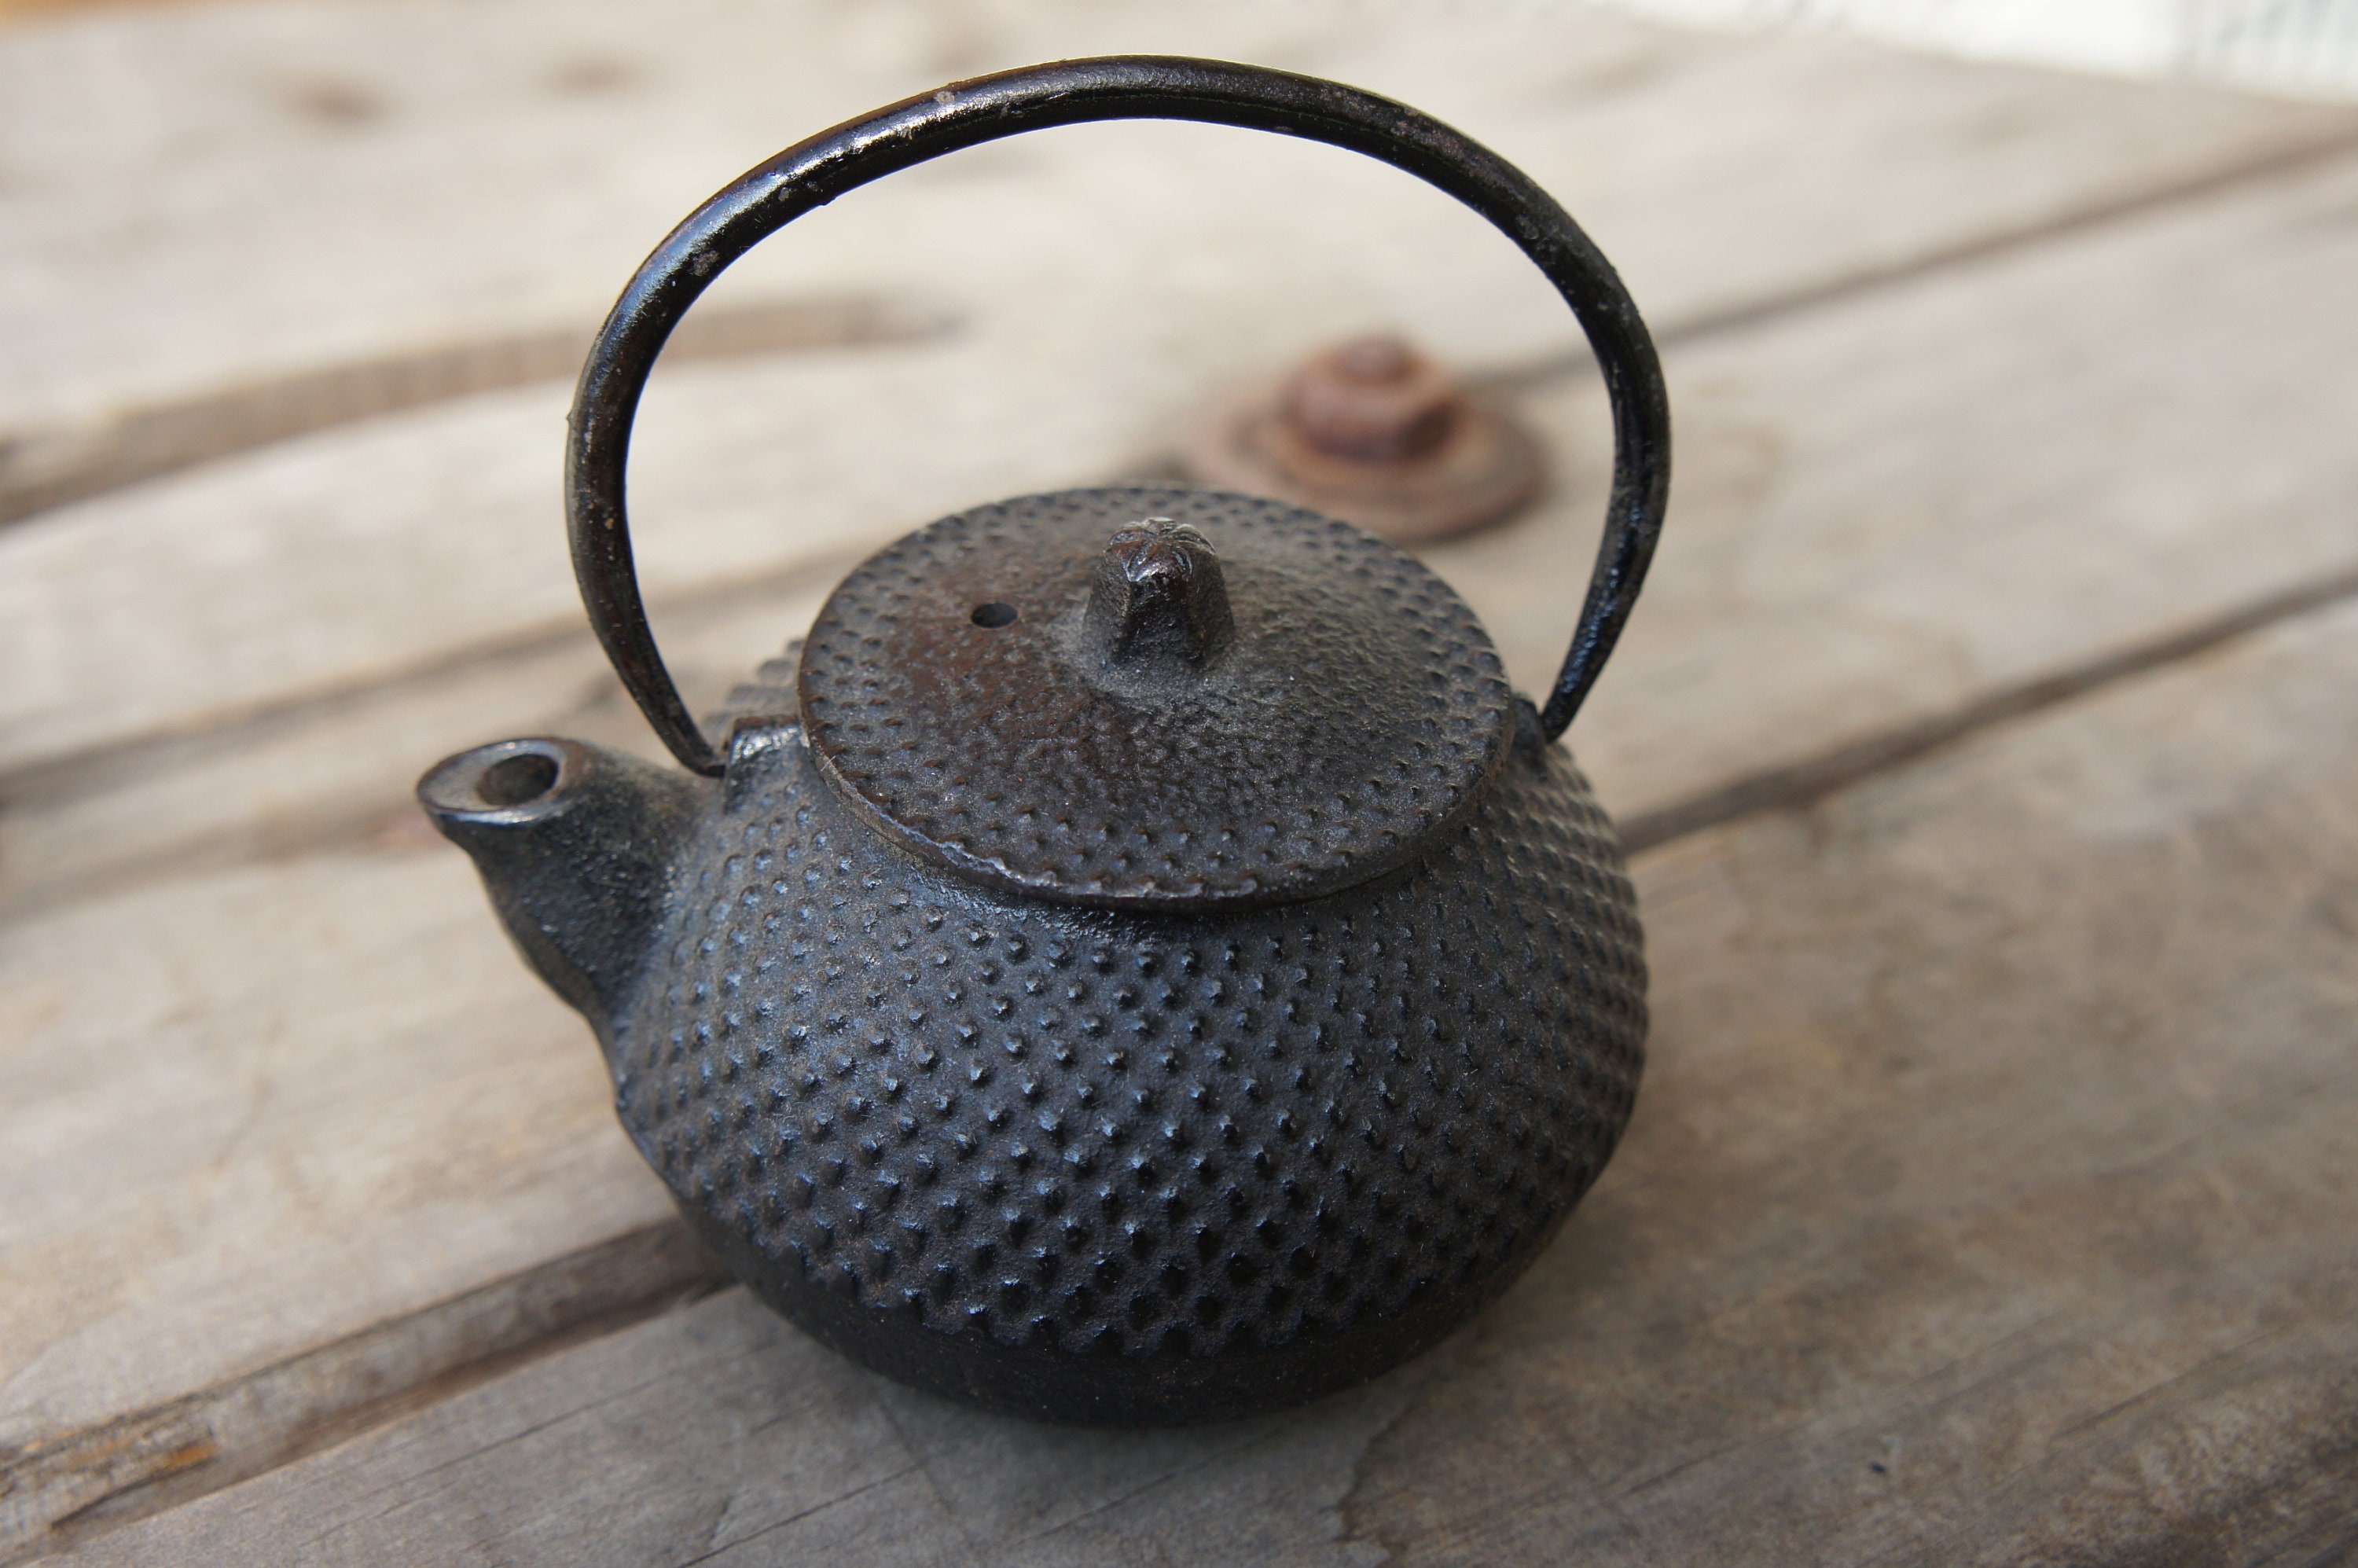 JapanBargain Stainless Steel Water Tea Kettle, IH 5, 0 Liter #H-1740